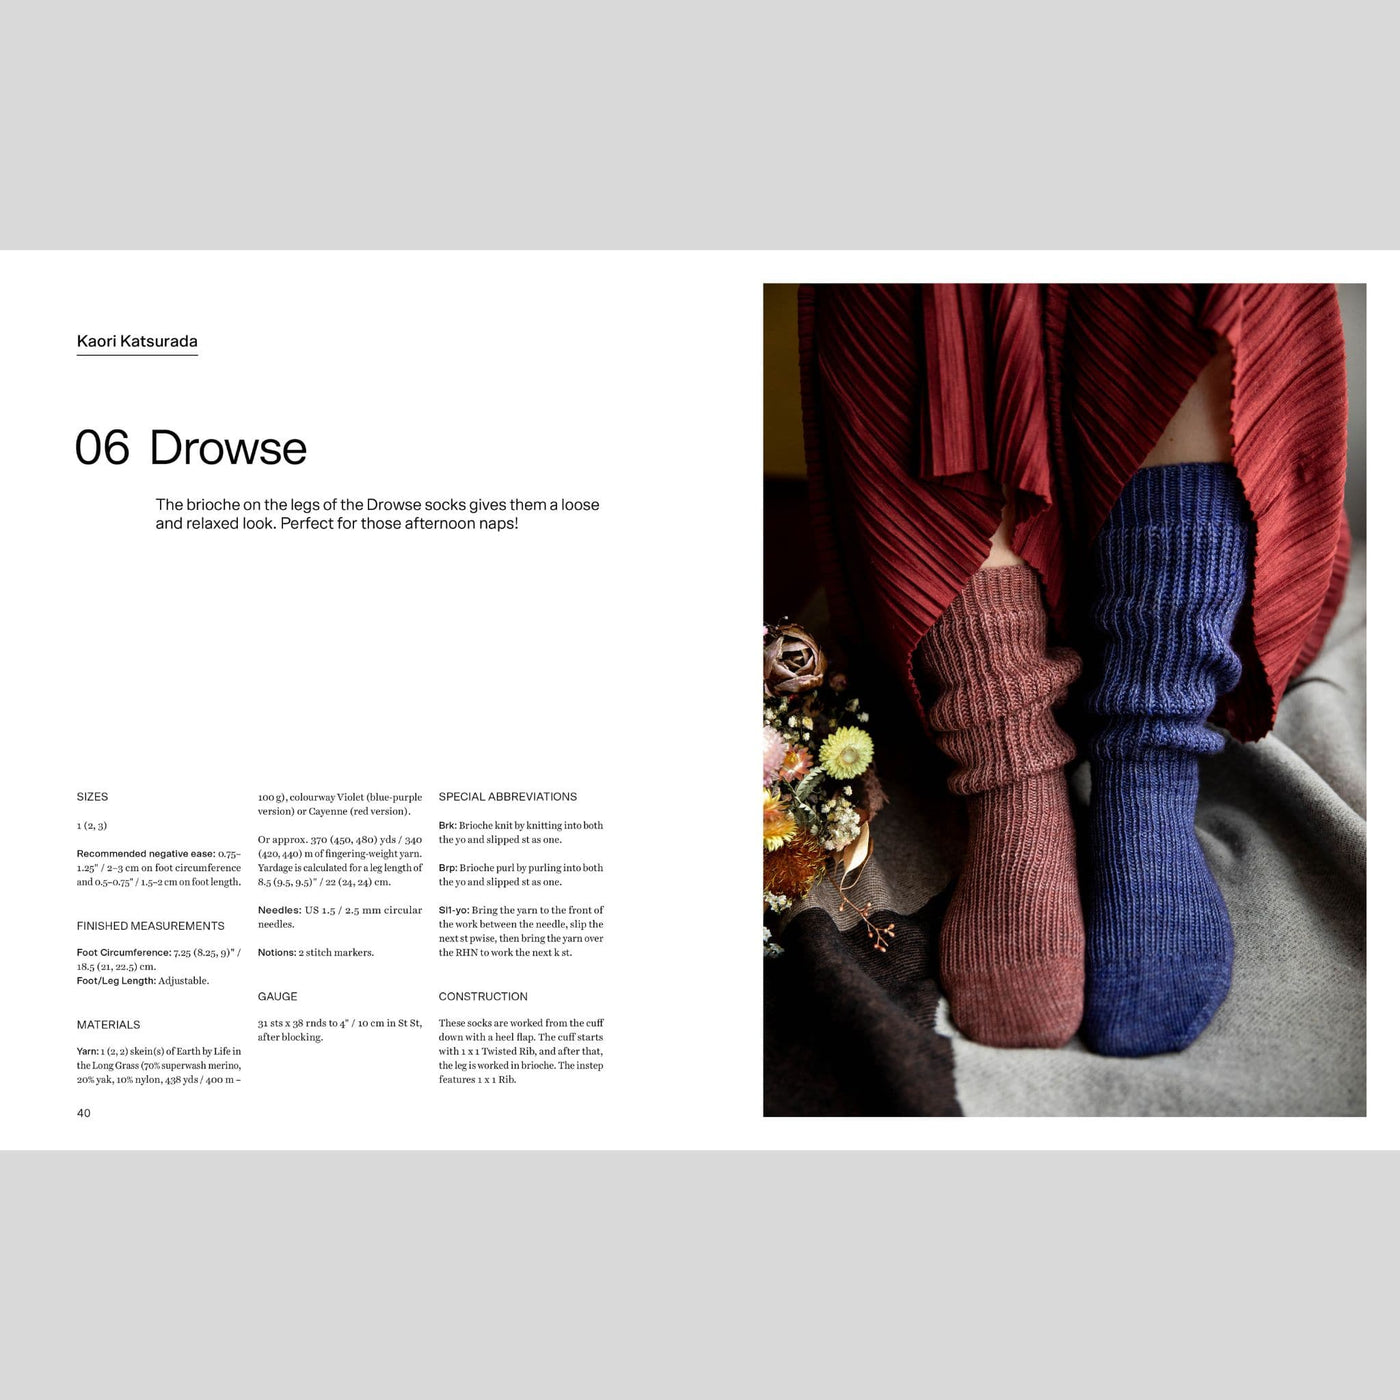 52 Weeks of Socks, Vol. 2 (Laine) – Spun